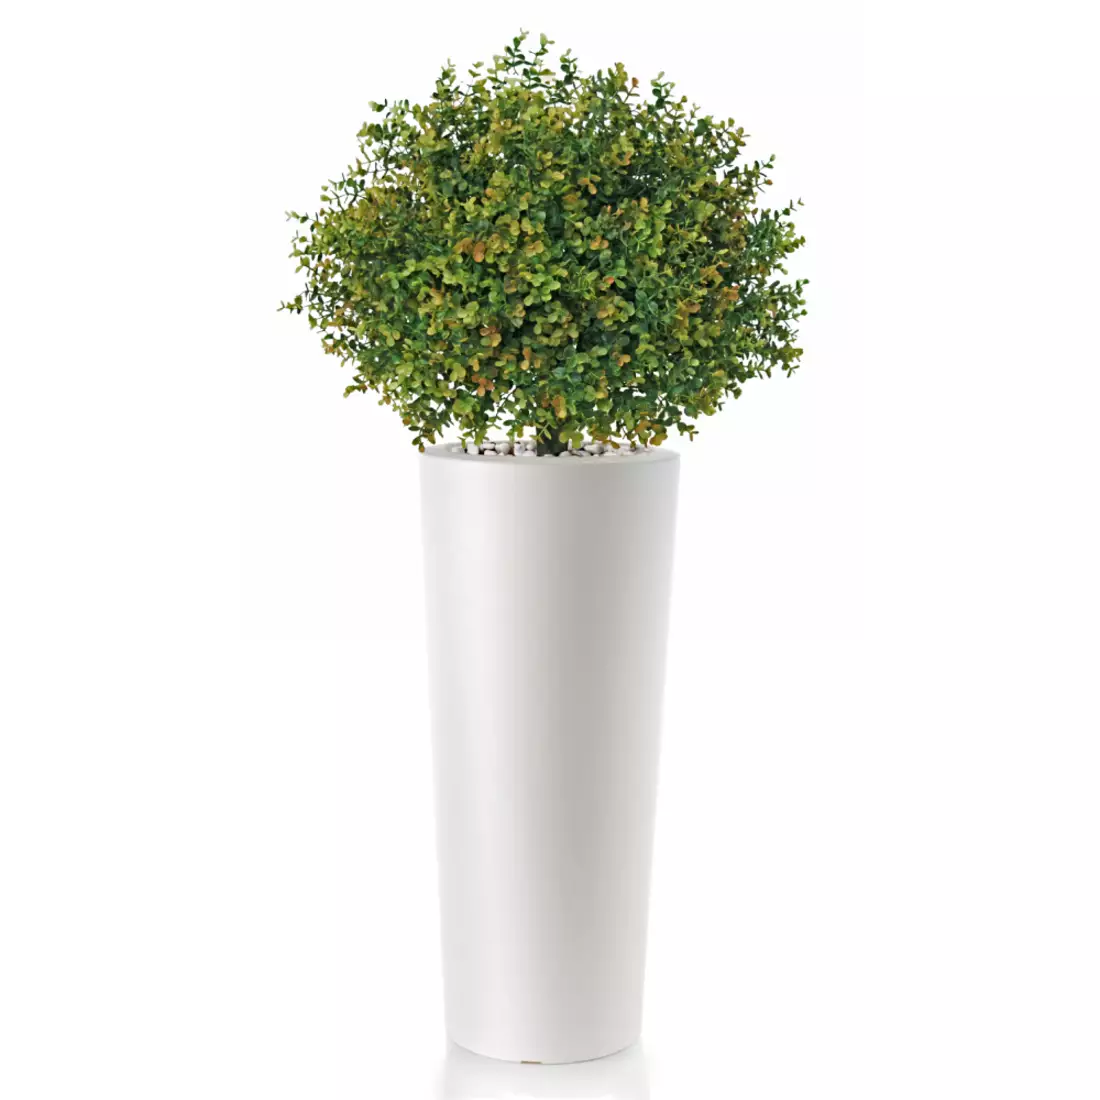 Rostlina Boxwood Topiary h 135 cm -  Ø 60 cm Green 5564002